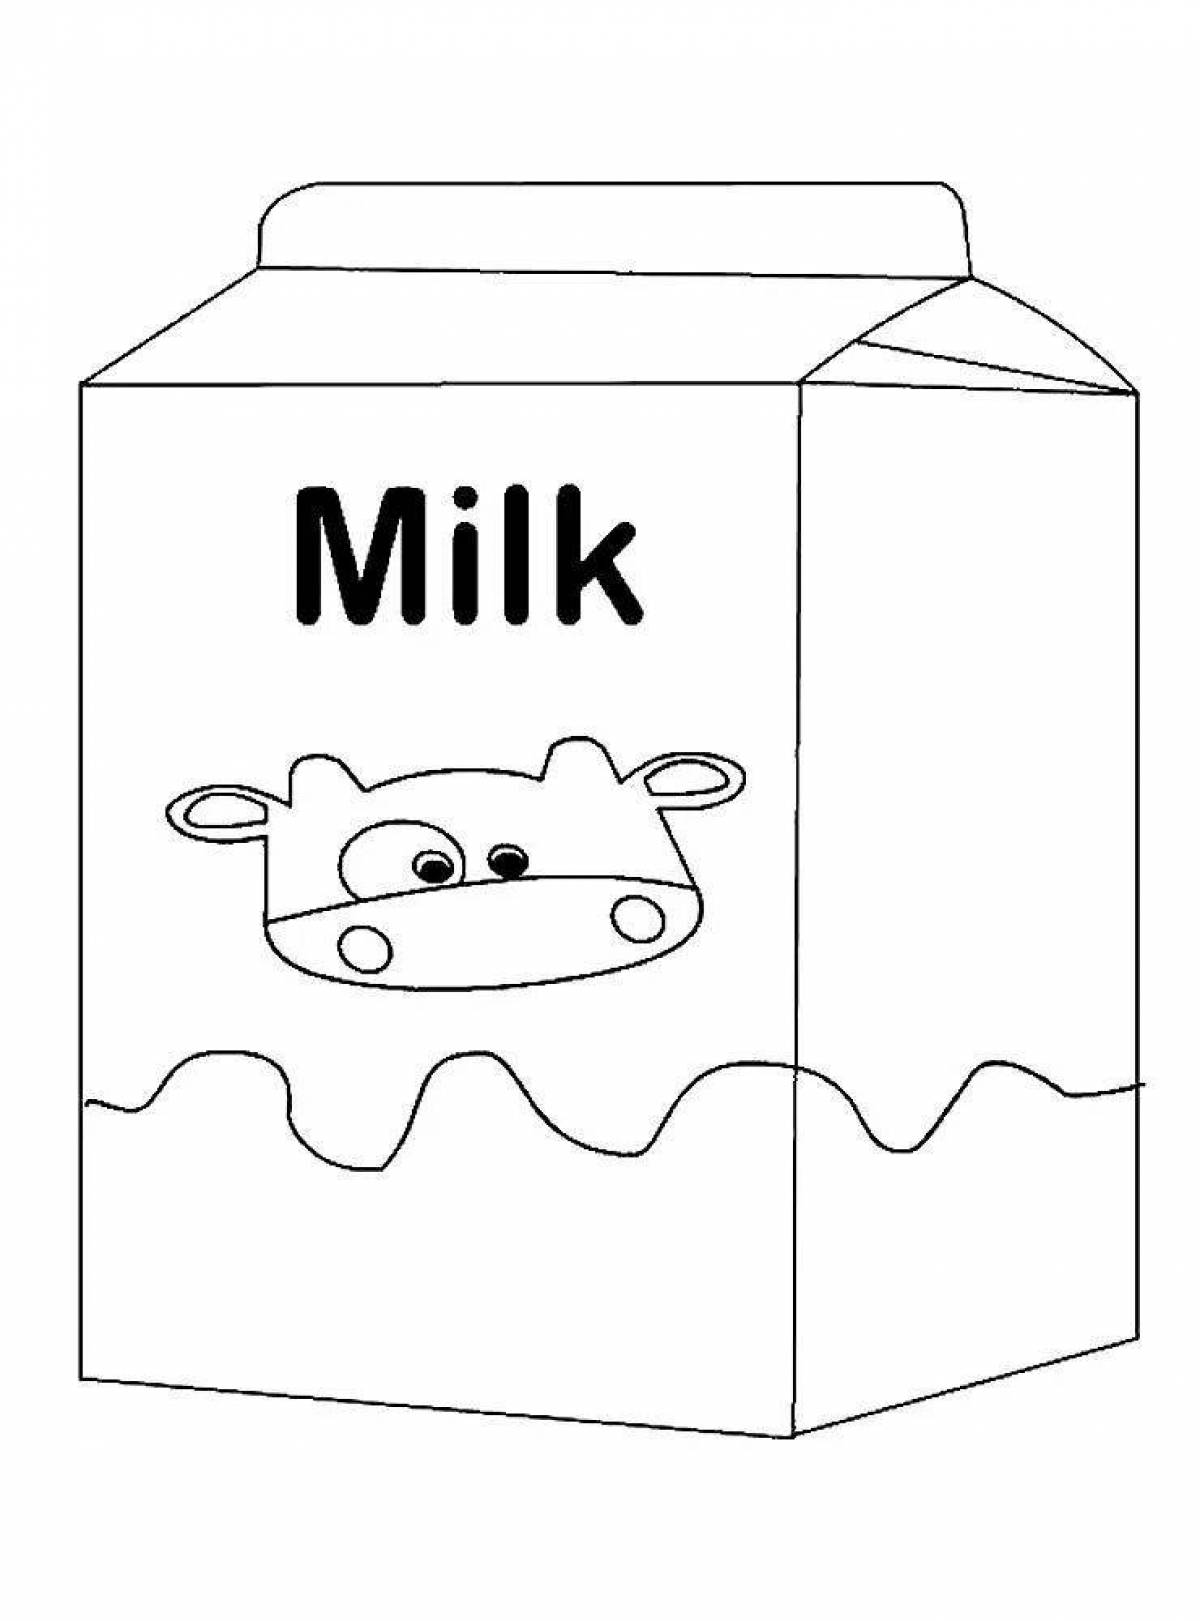 Увлекательная молочная раскраска для детей